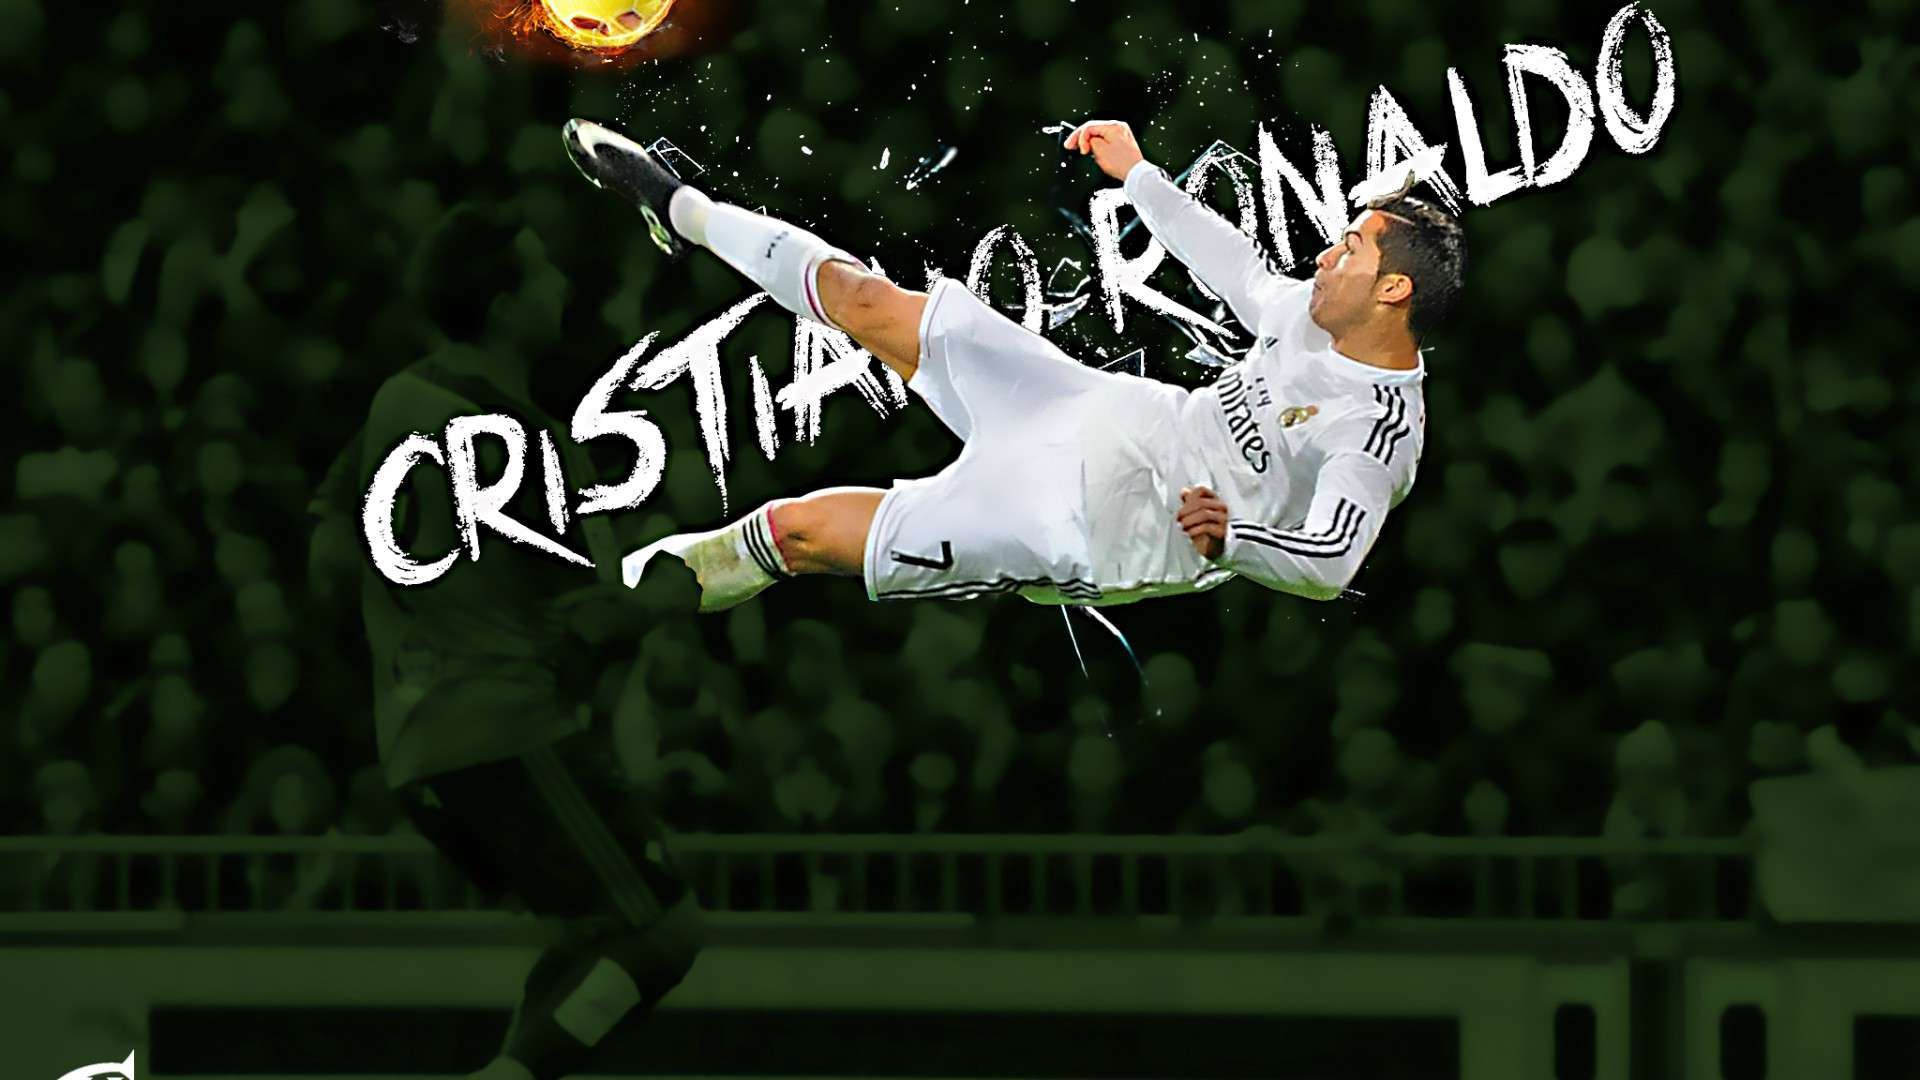 Cristiano Ronaldo Wallpaper For